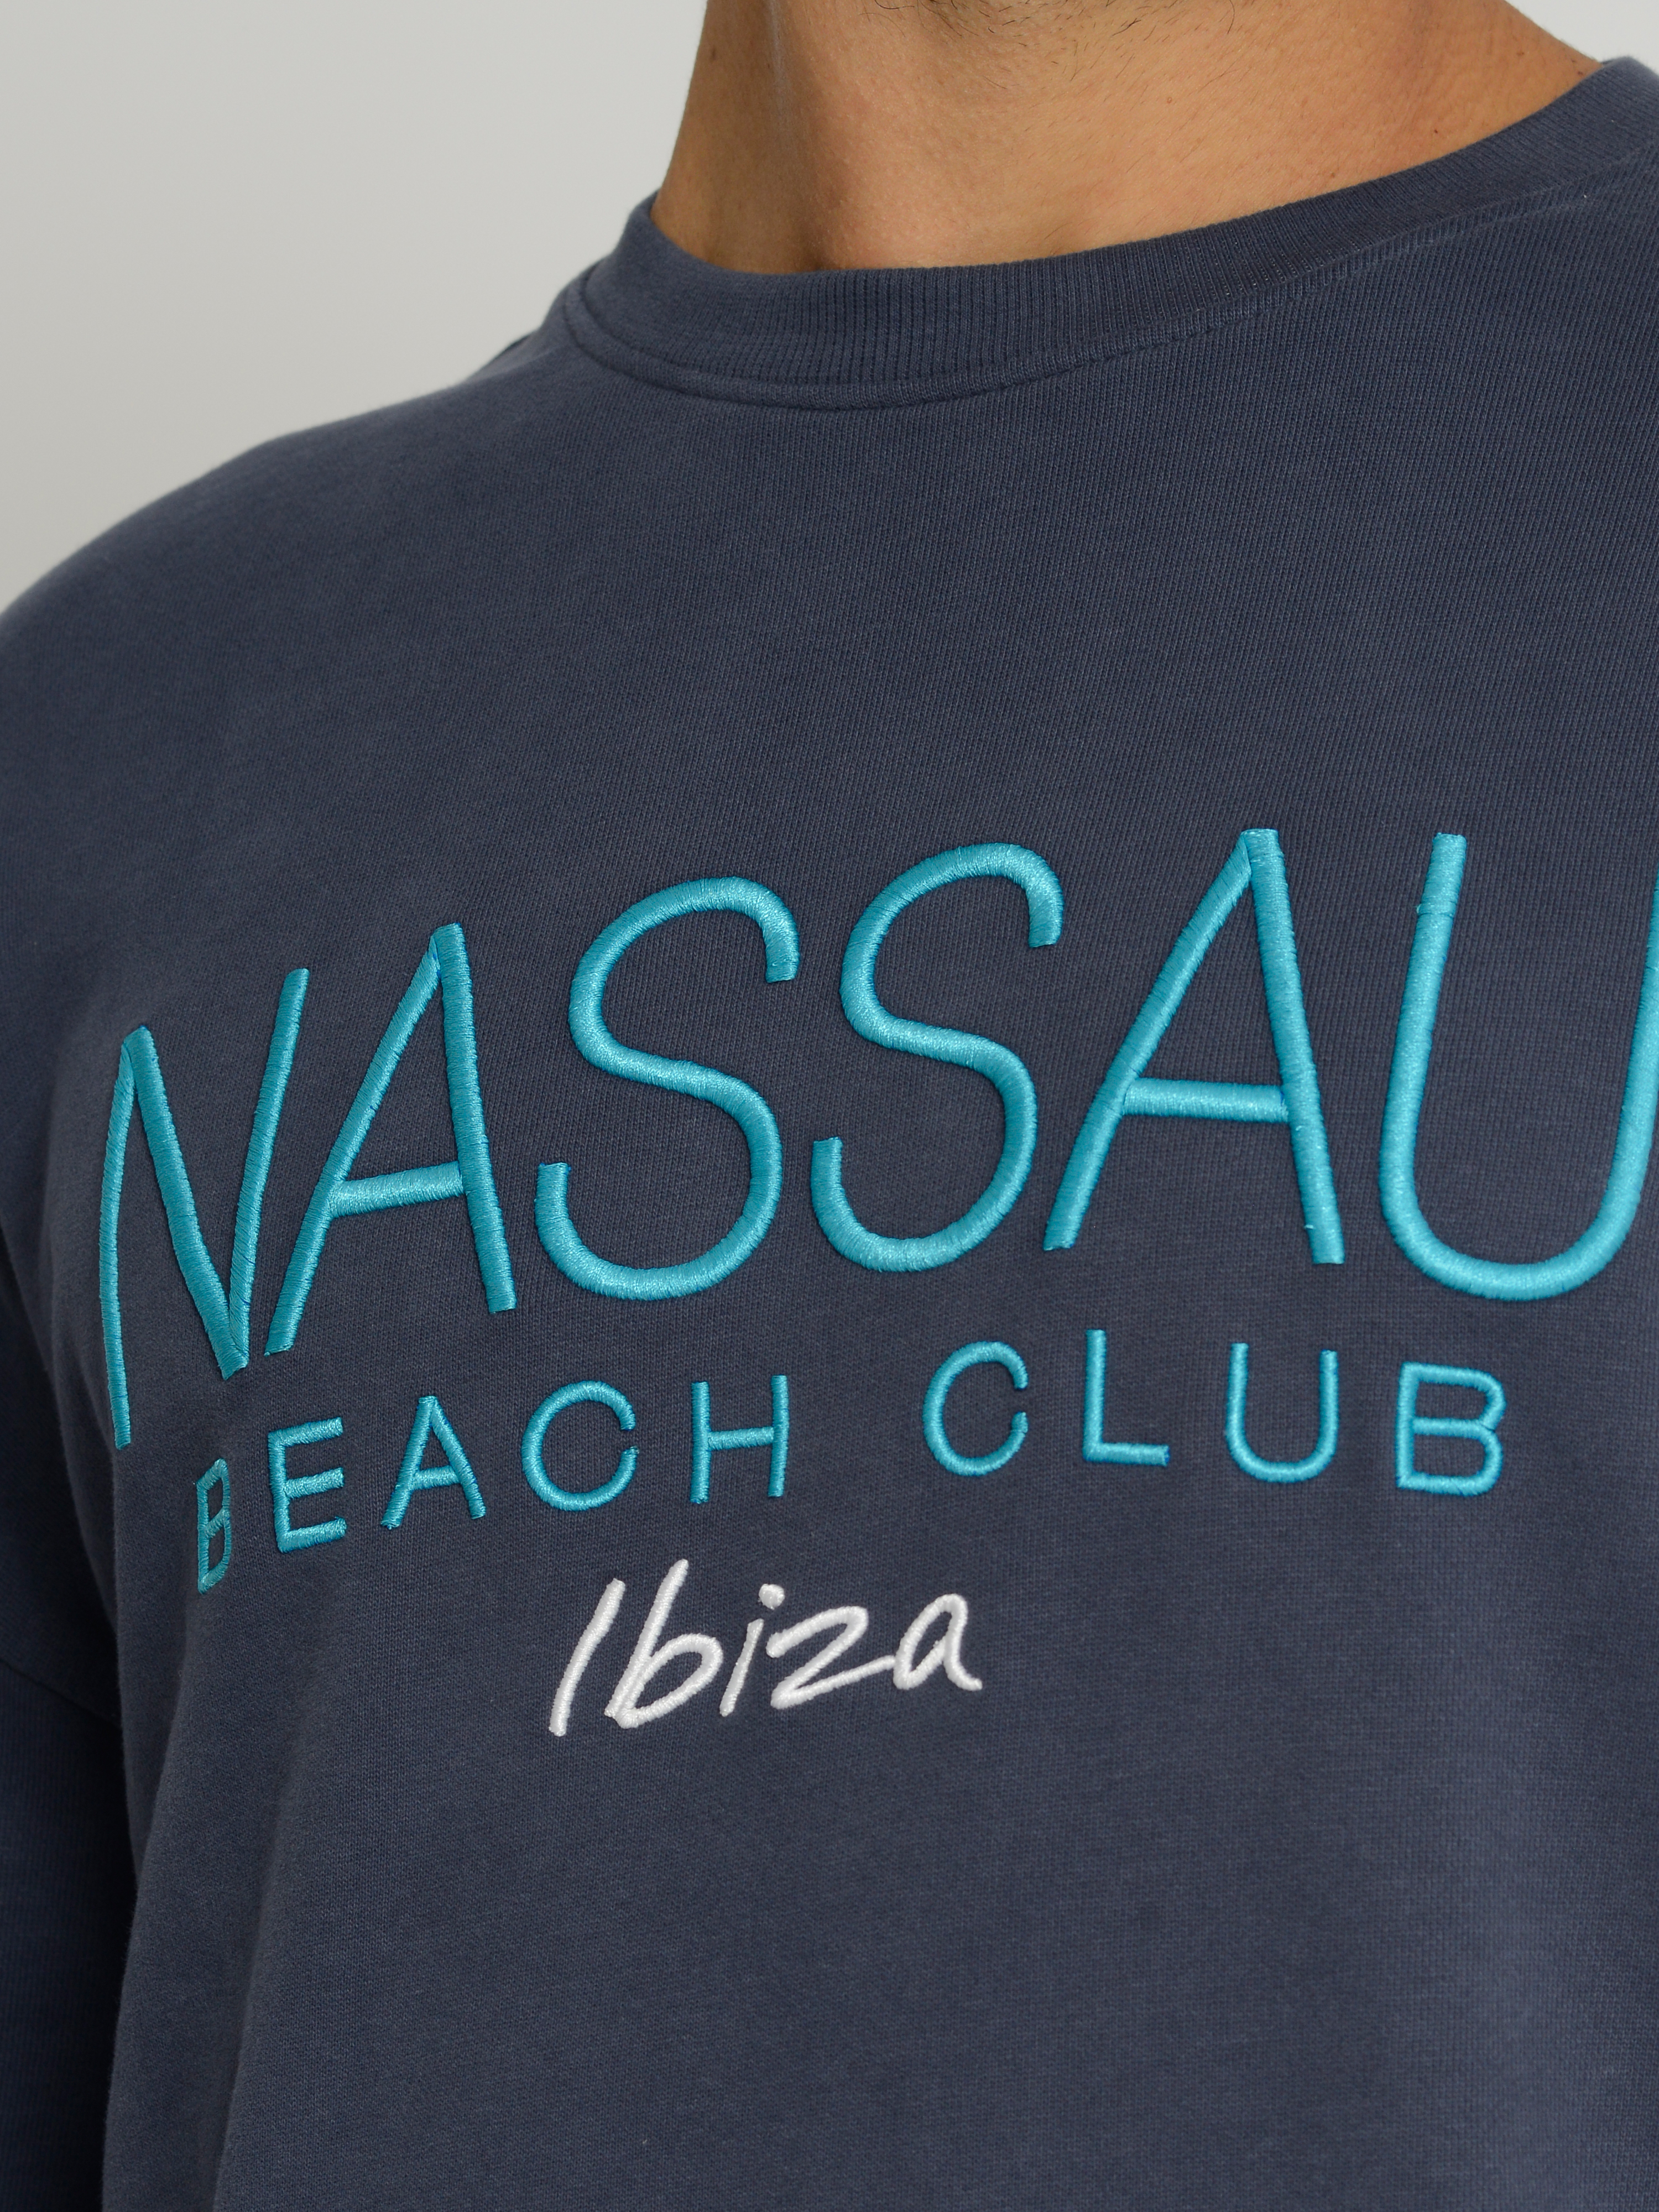  Nassau Beach Sweatshirt NB231041 